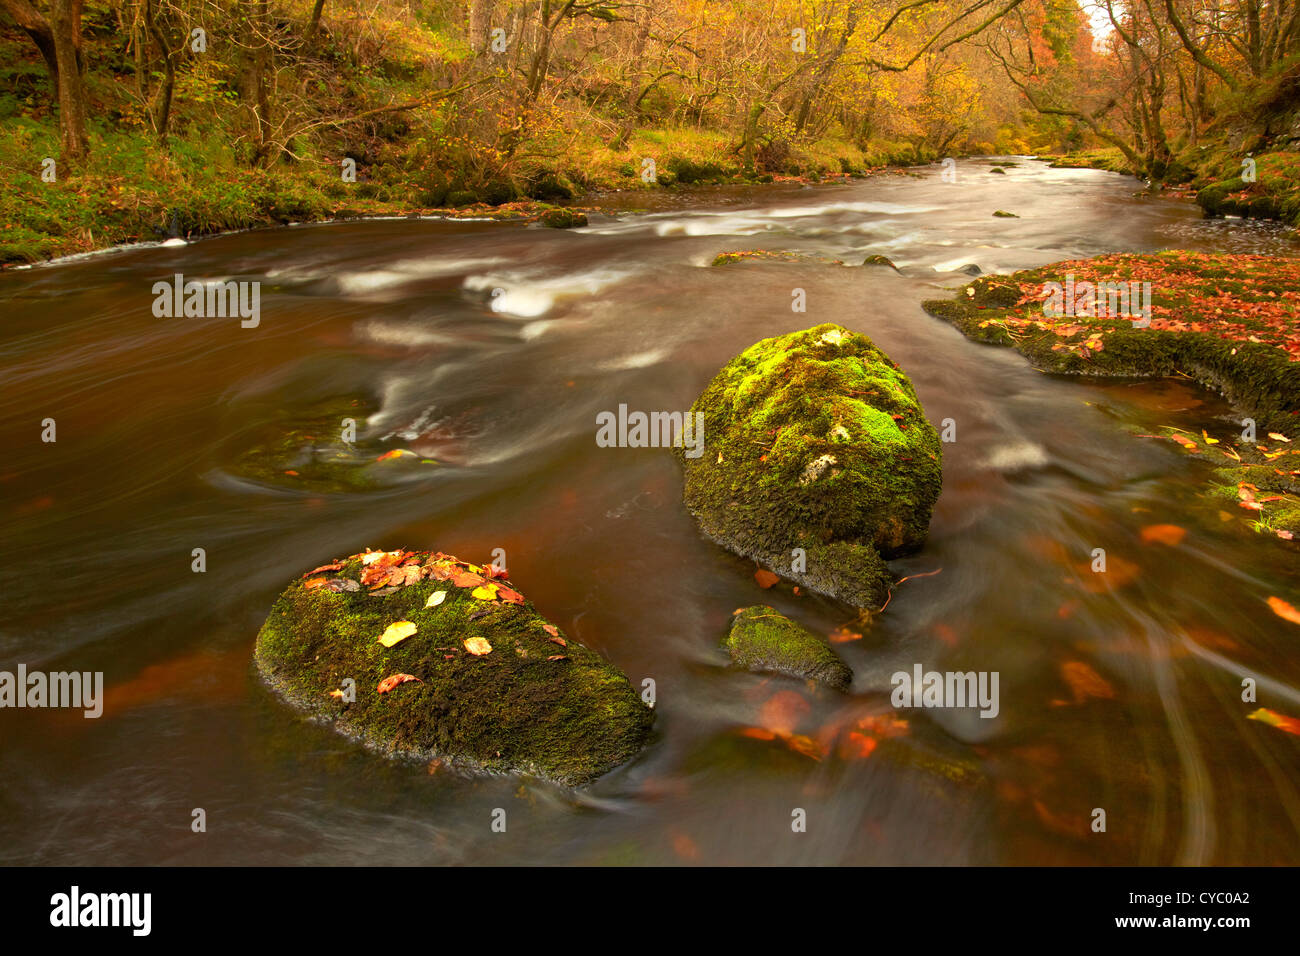 La Rivière, Ystradfellte Mellte, Brecon Beacons, Powys Pays de Galles Banque D'Images